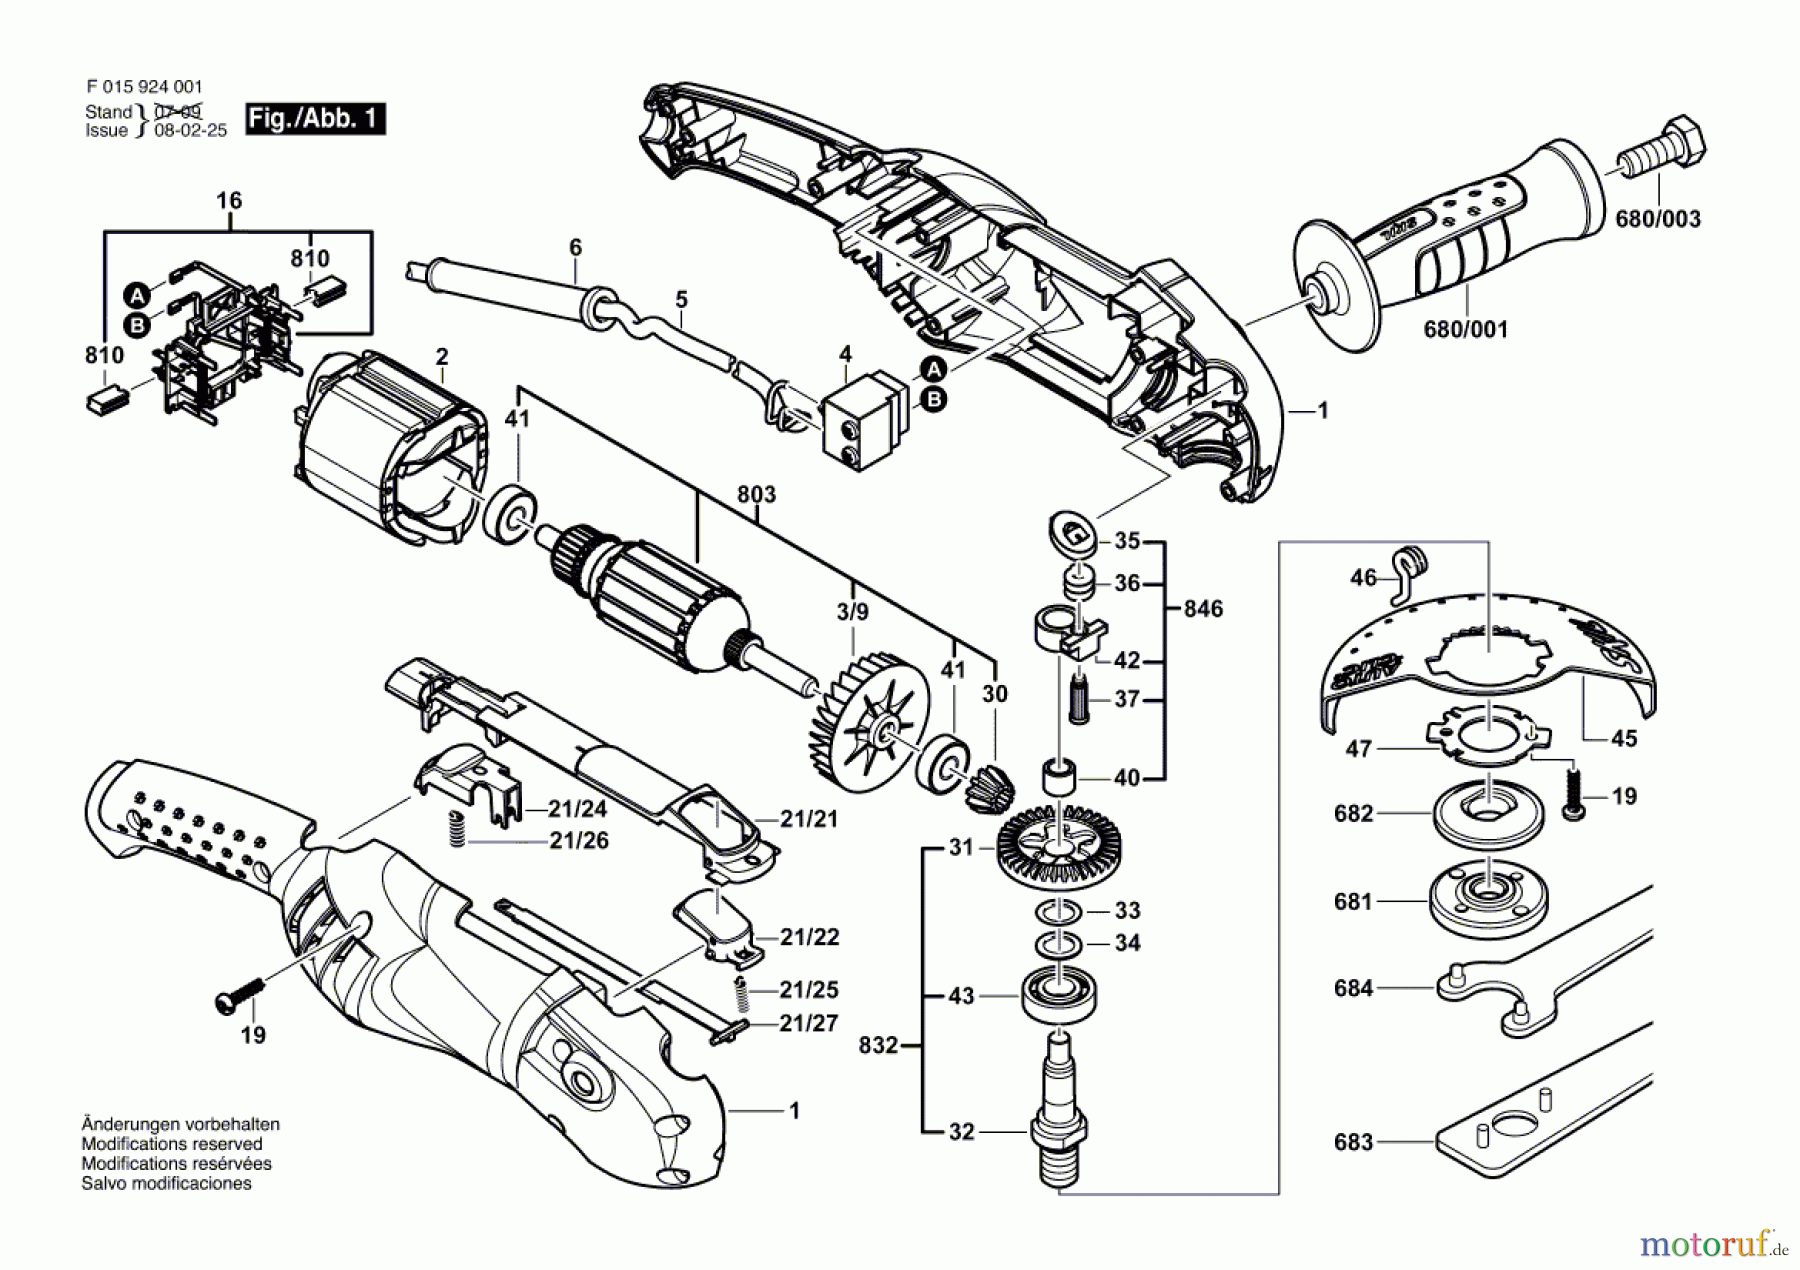  Bosch Werkzeug Winkelschleifer 9240 Seite 1